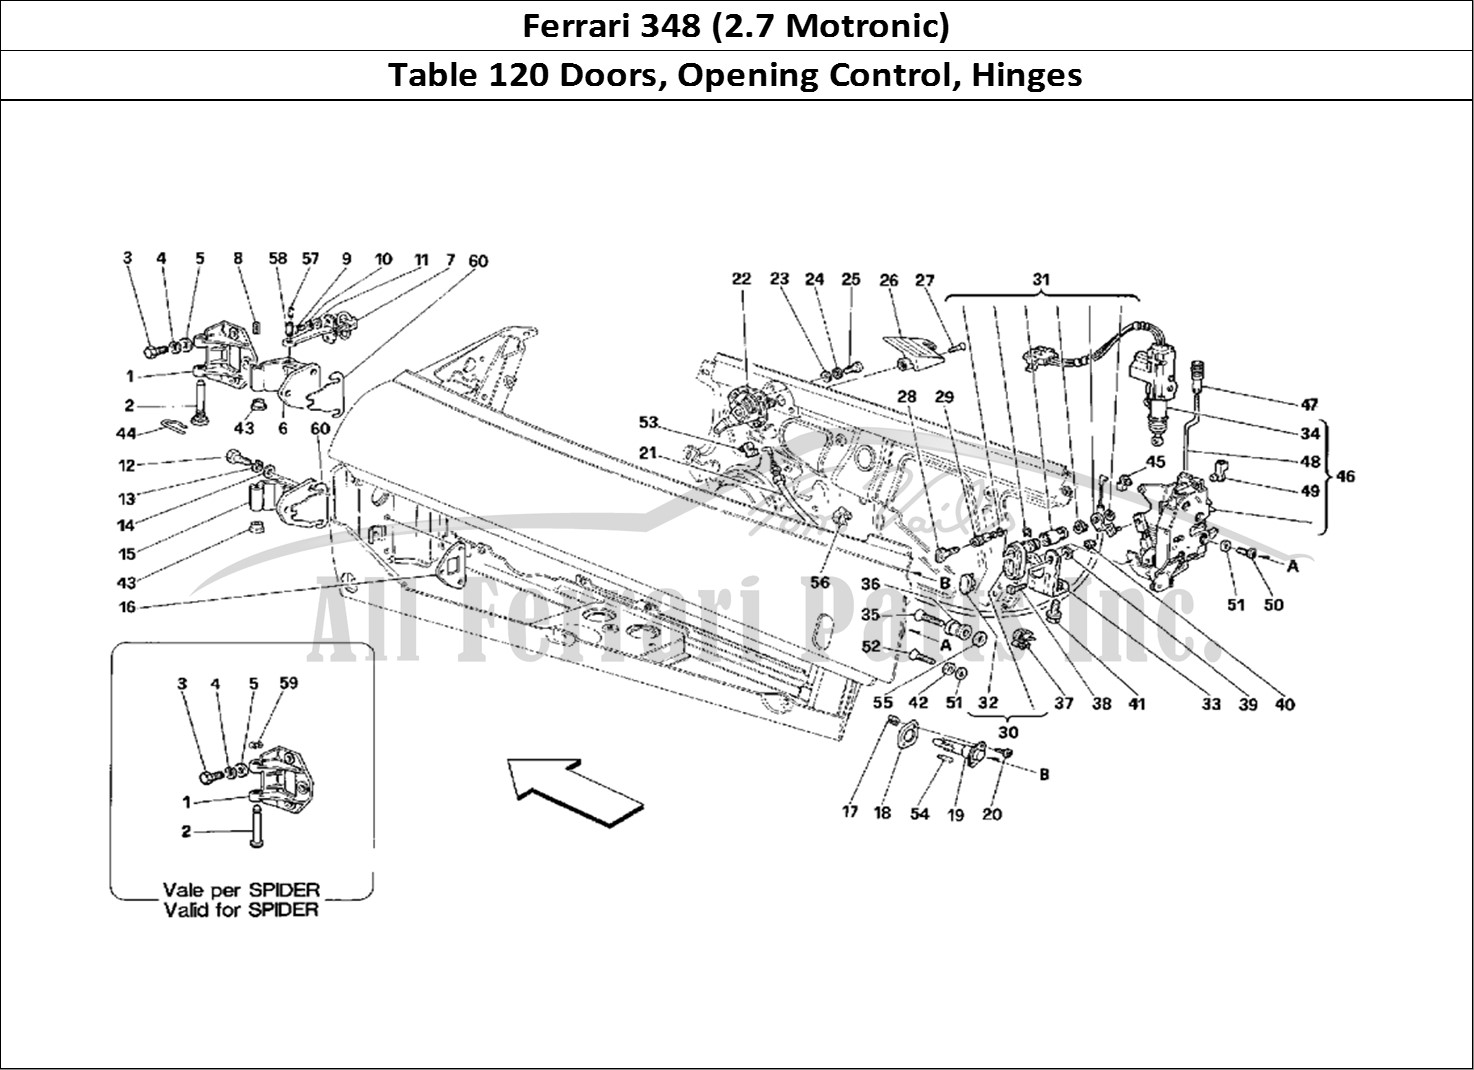 Ferrari Parts Ferrari 348 (2.7 Motronic) Page 120 Doors - Opening Control a